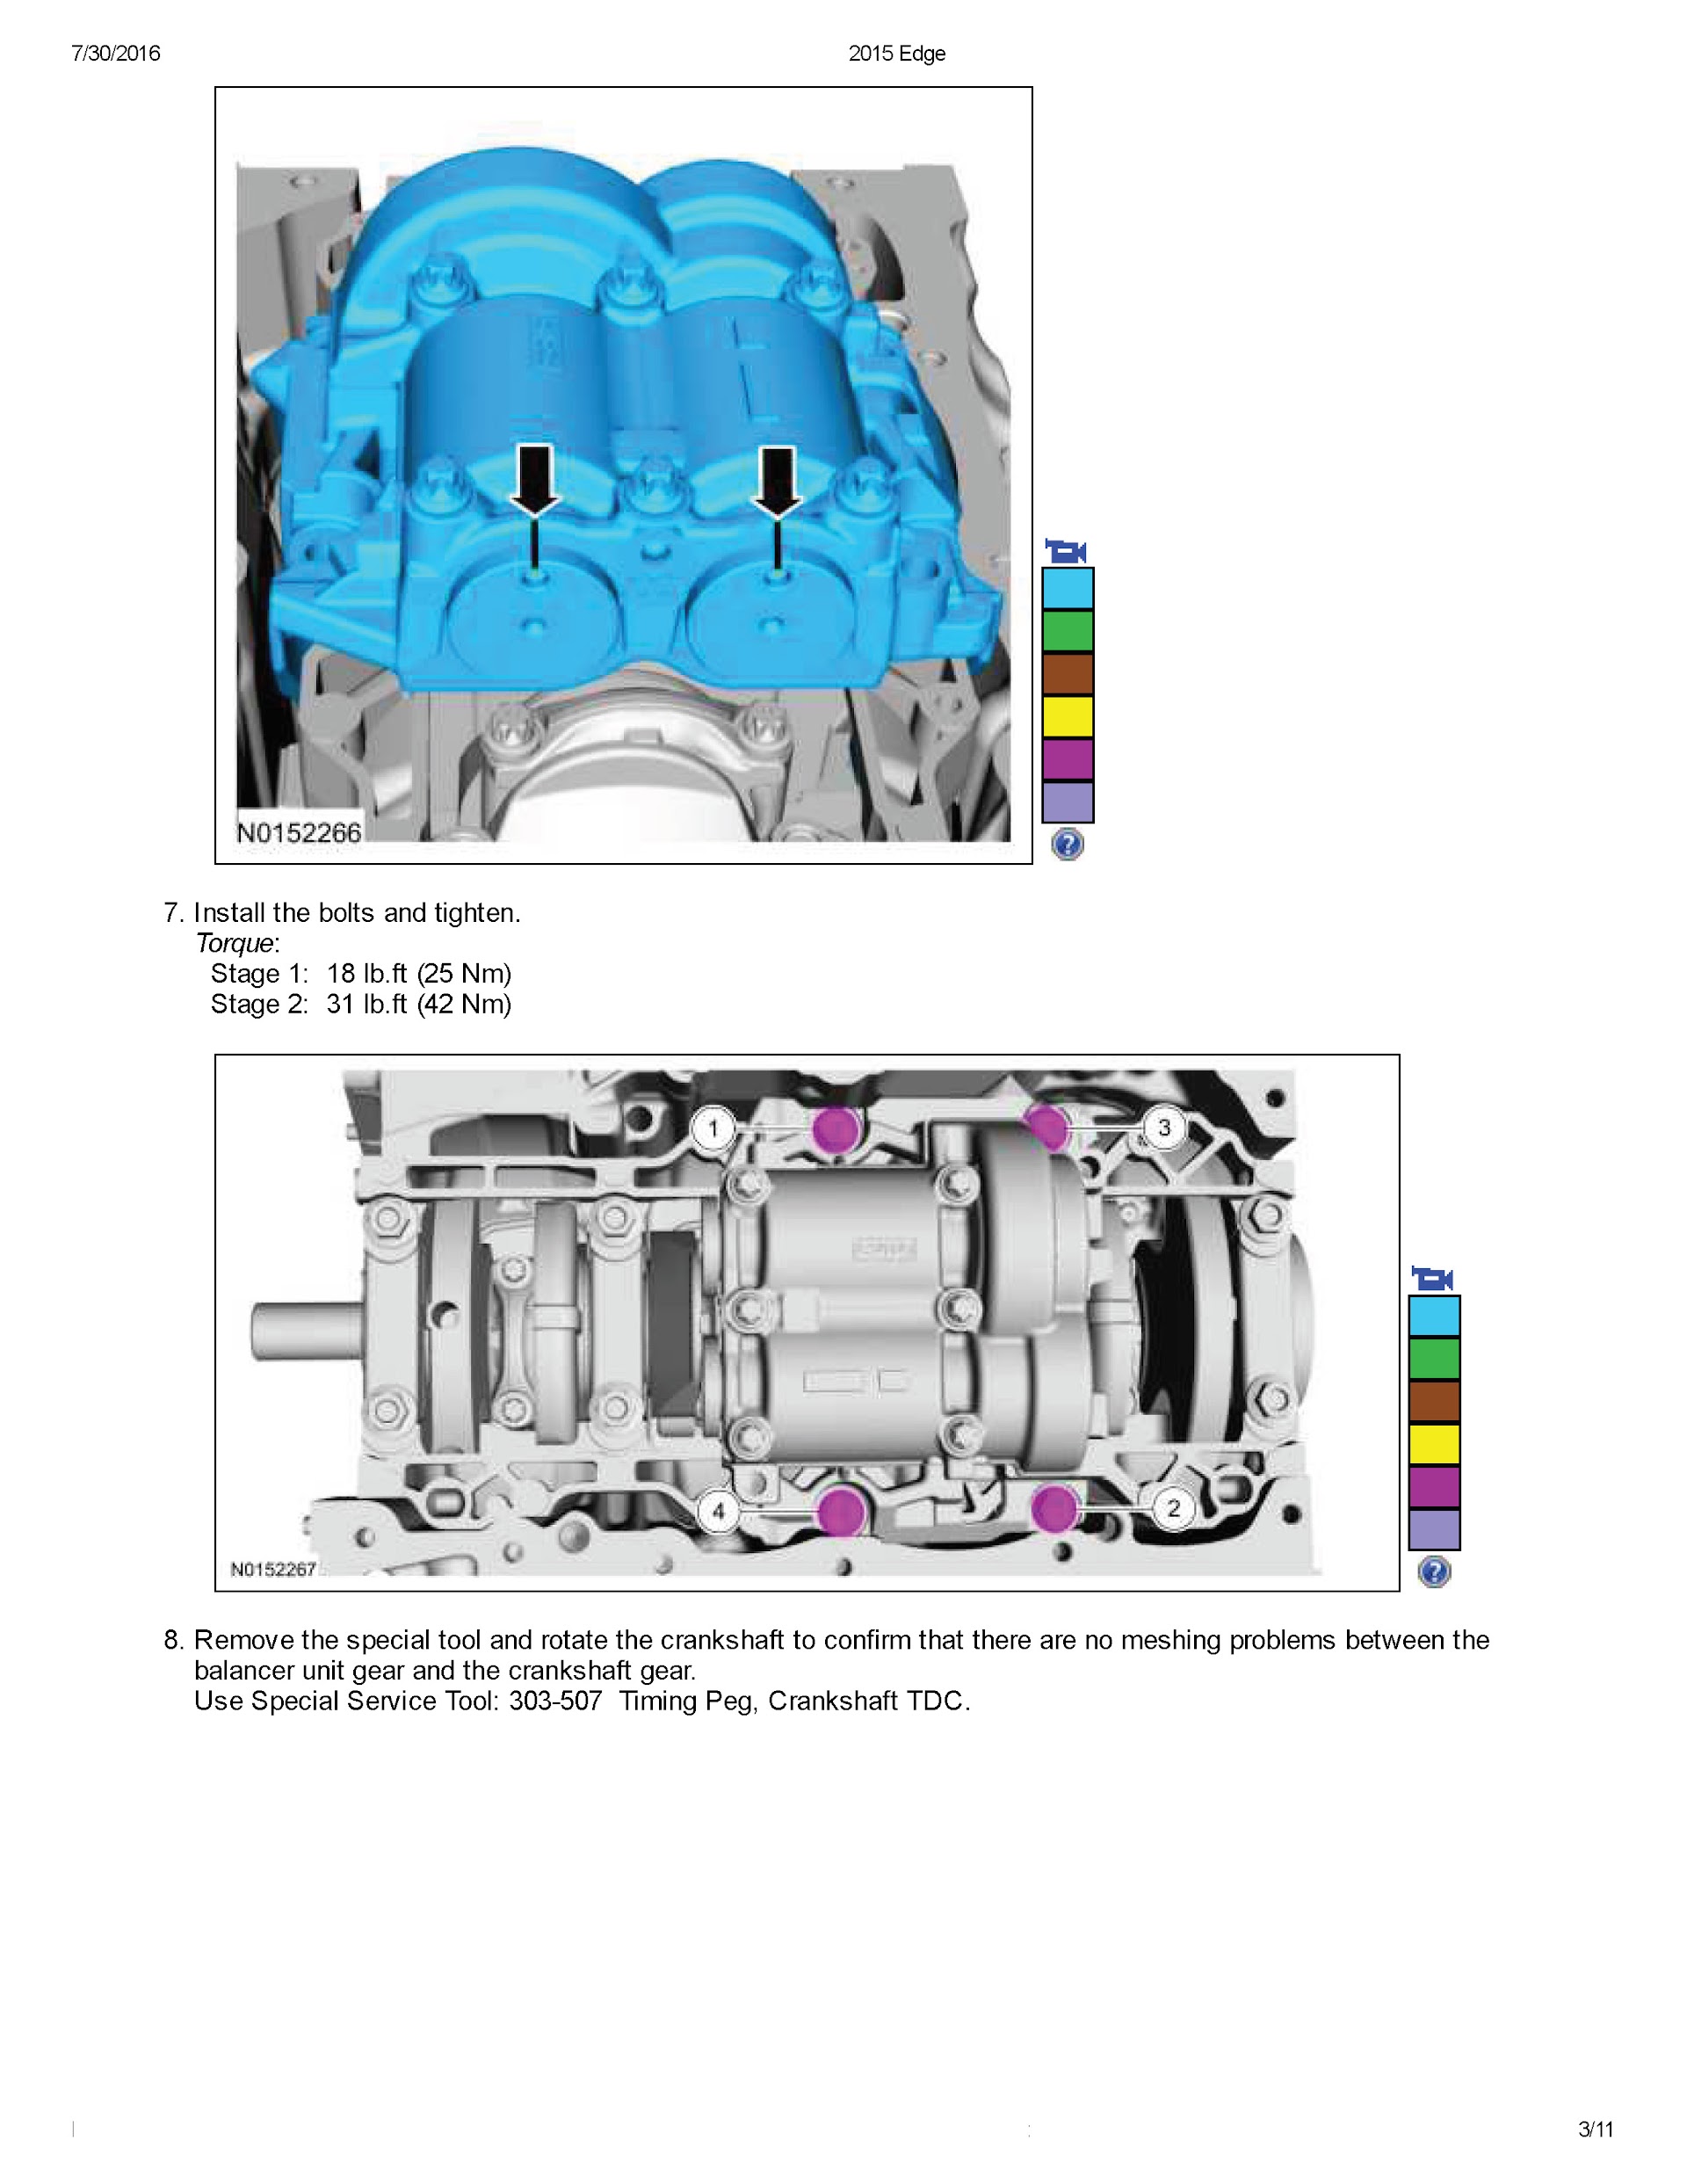 2018 Ford Edge (Endura) Repair Manual crankshaft removal